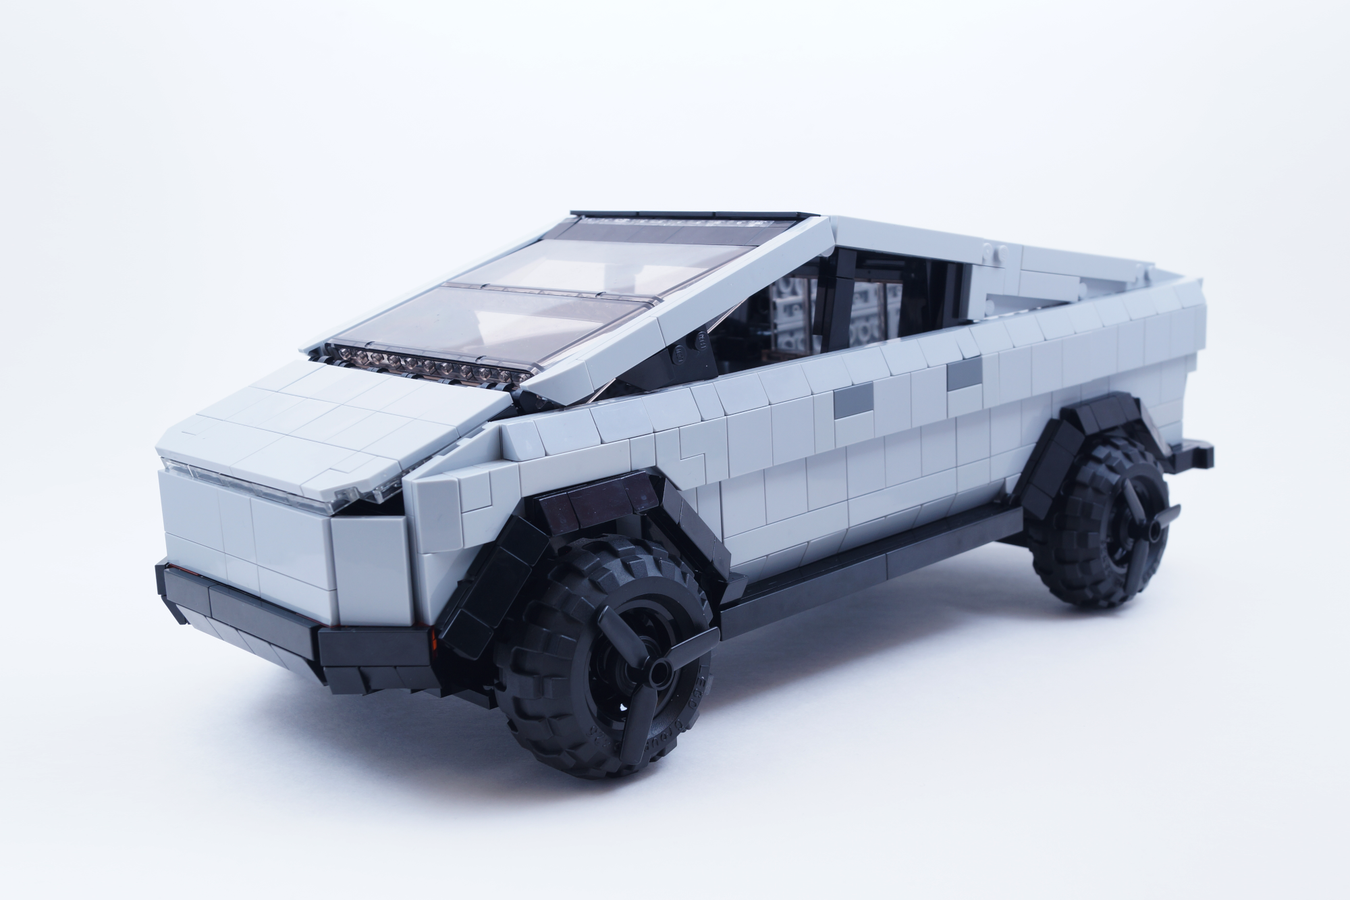 레고의 패러디 사이버트럭과는 다르다~ 레고 아이디어스에 등록된 리얼한 테슬라 사이버트럭 디자인...